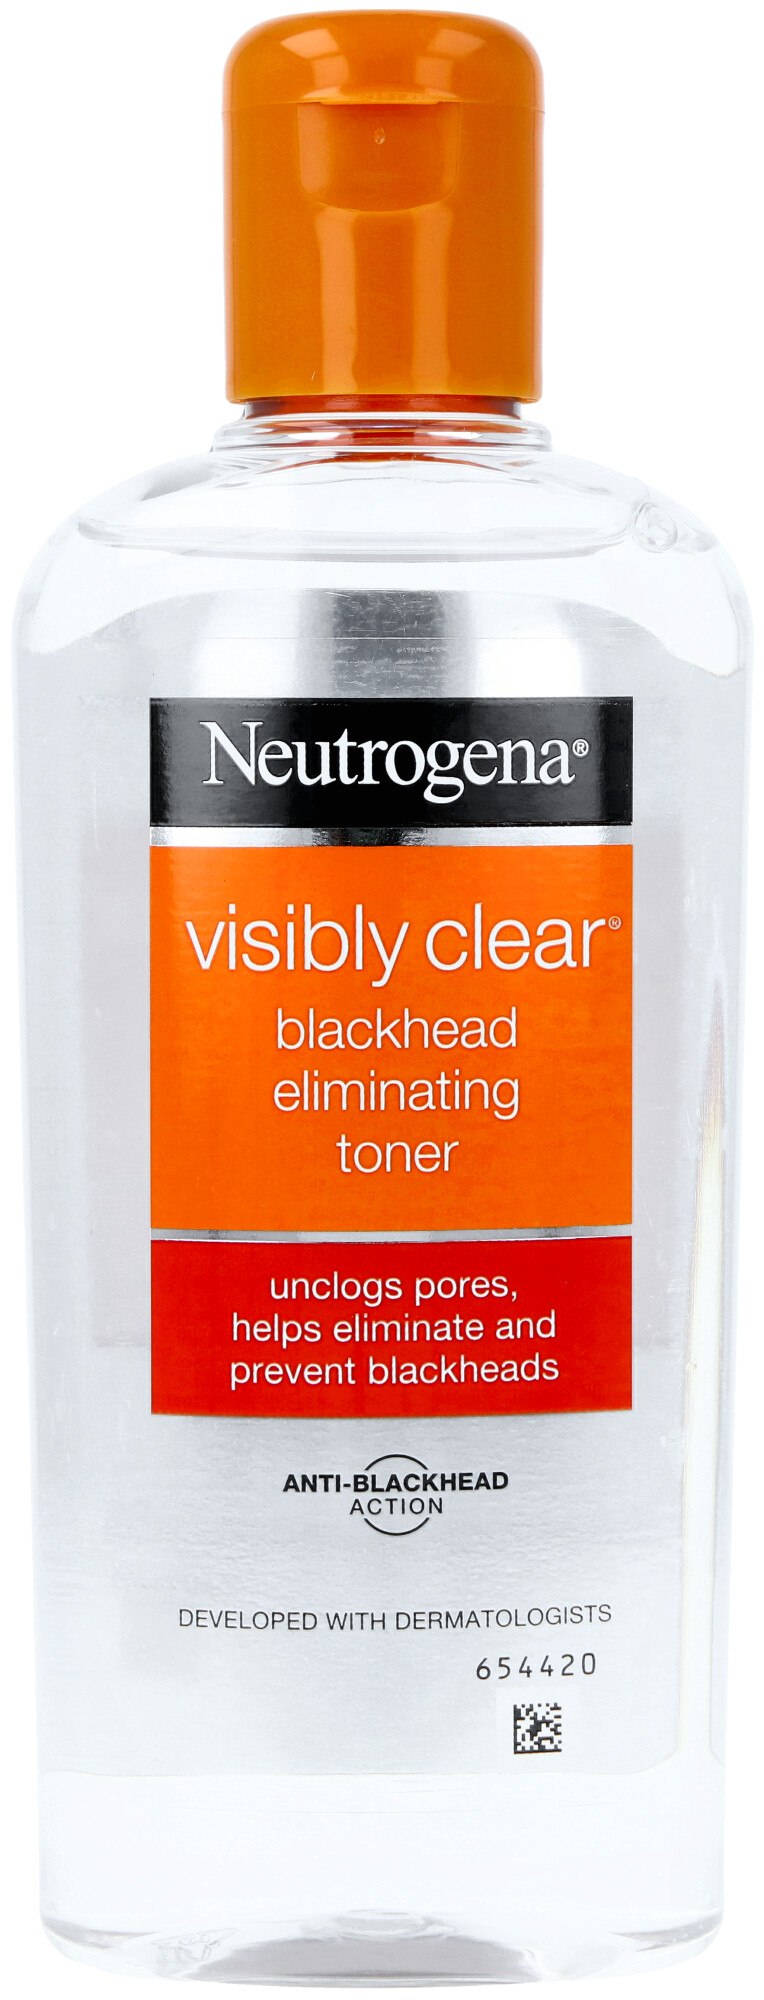 Neutrogena Visibly Clear Blackhead Eliminating Toner